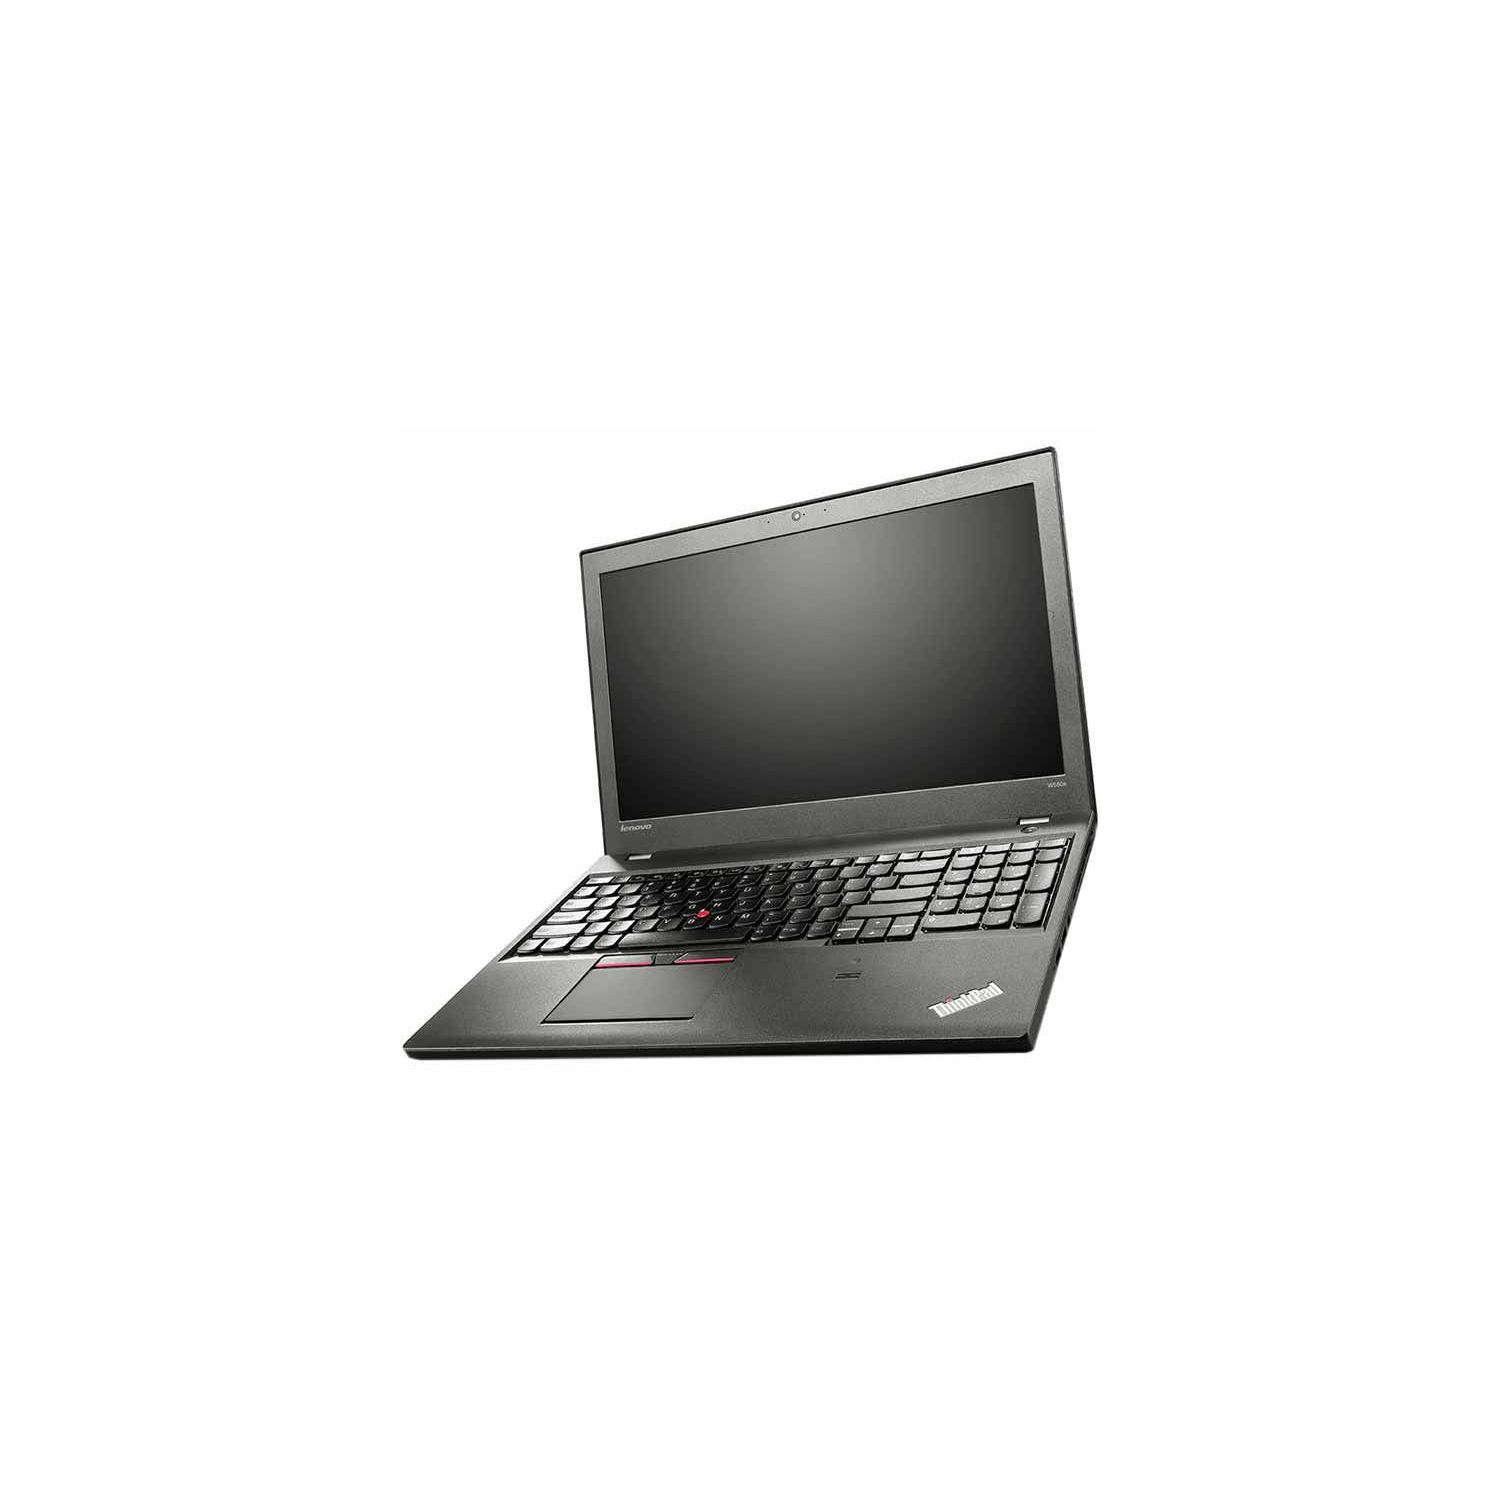 Refurbished (Good) - Lenovo ThinkPad W550s 15" FHD Laptop, Core i7-5500U, 16 GB DDR3, 512 GB SSD, Win 10 Pro